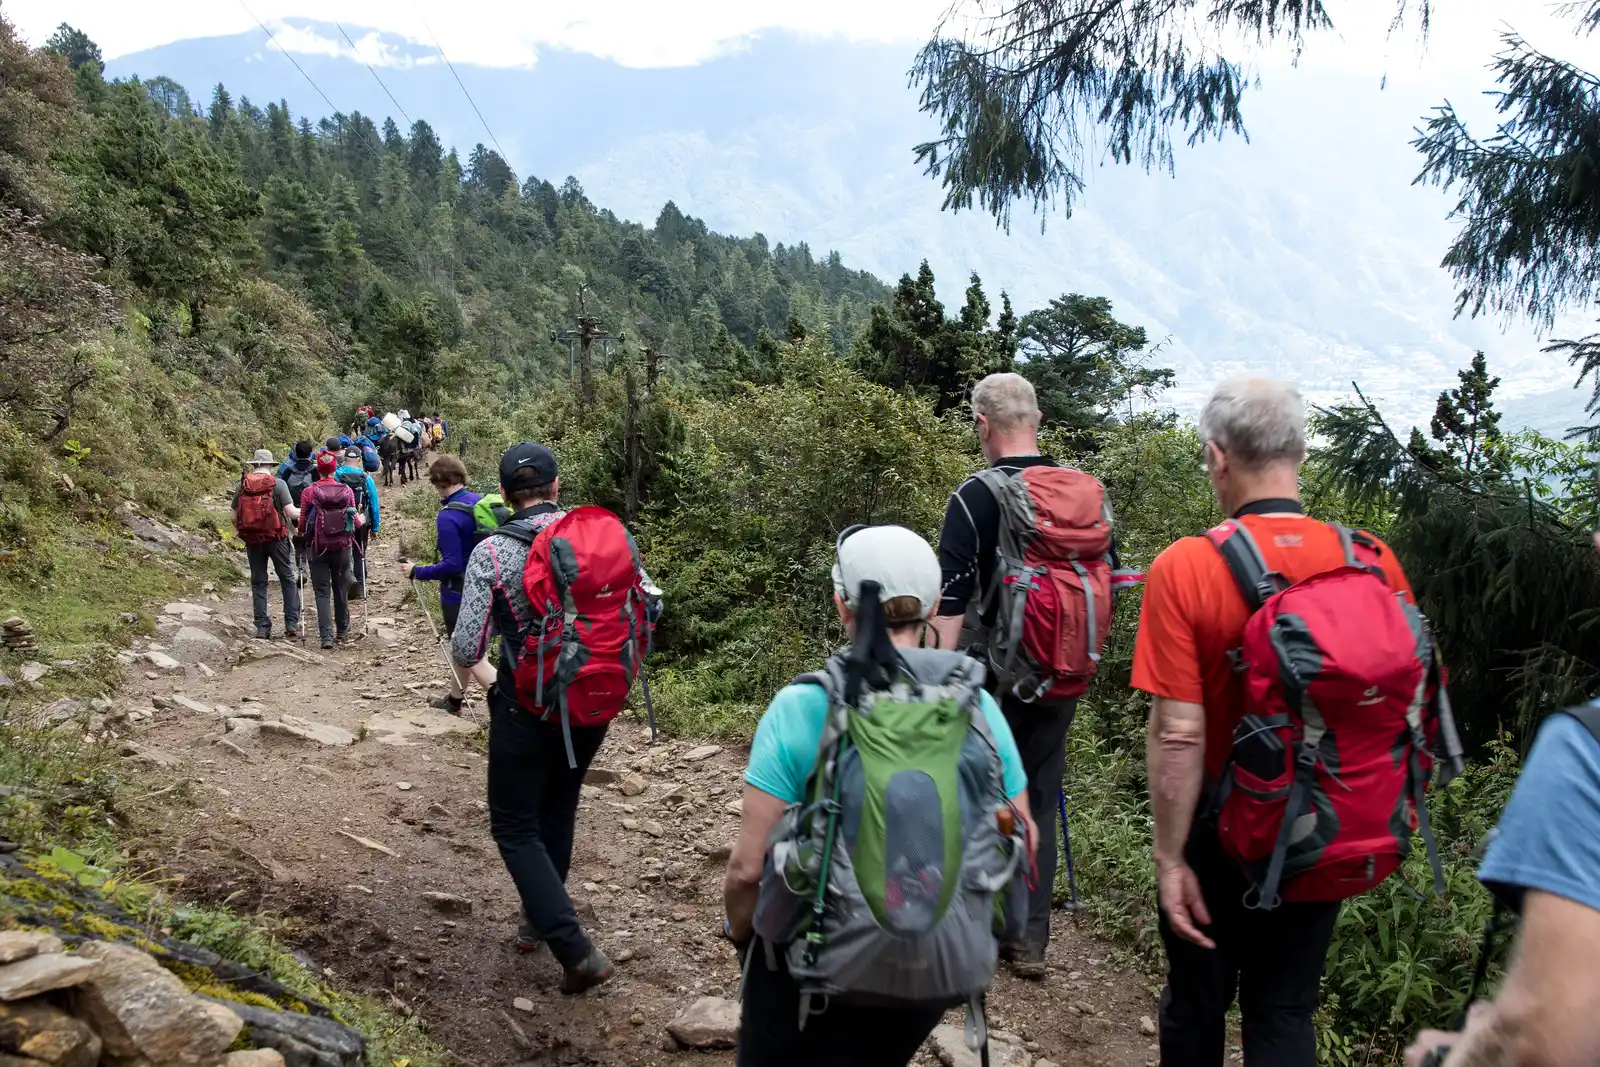 On and around Nepal Tour and Druk Path Trek Bhutan